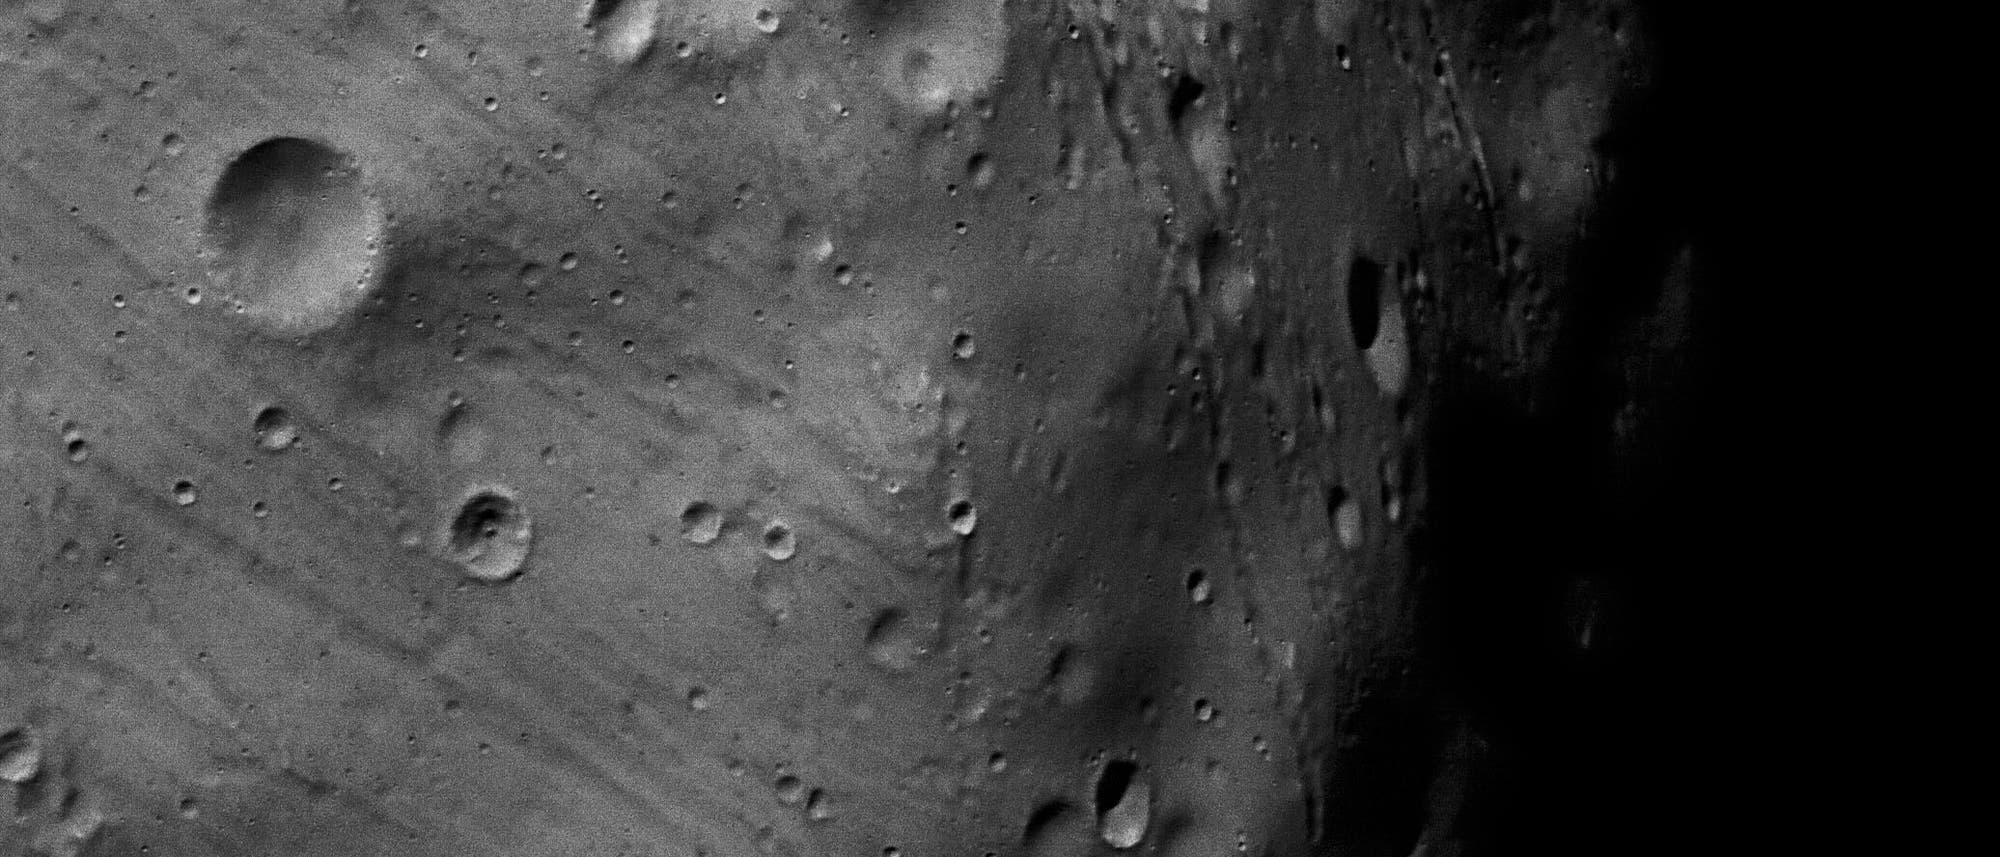 Übersichtsaufnahme von Phobos